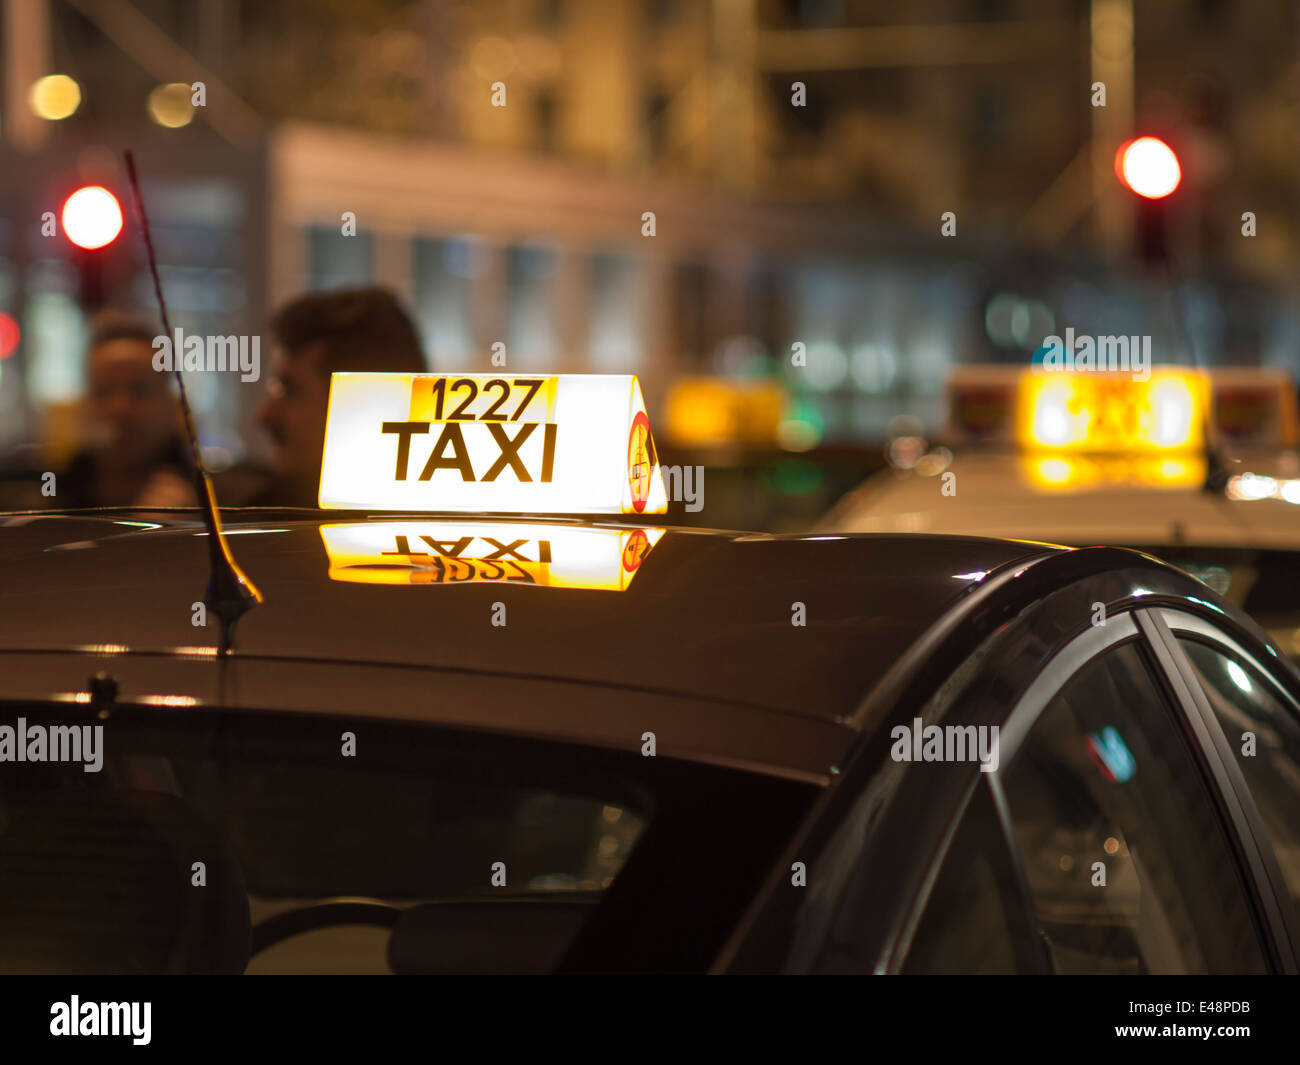 Taxi-Leuchtreklame auf dem Dach eines Taxis in Zürich, Schweiz  Stockfotografie - Alamy